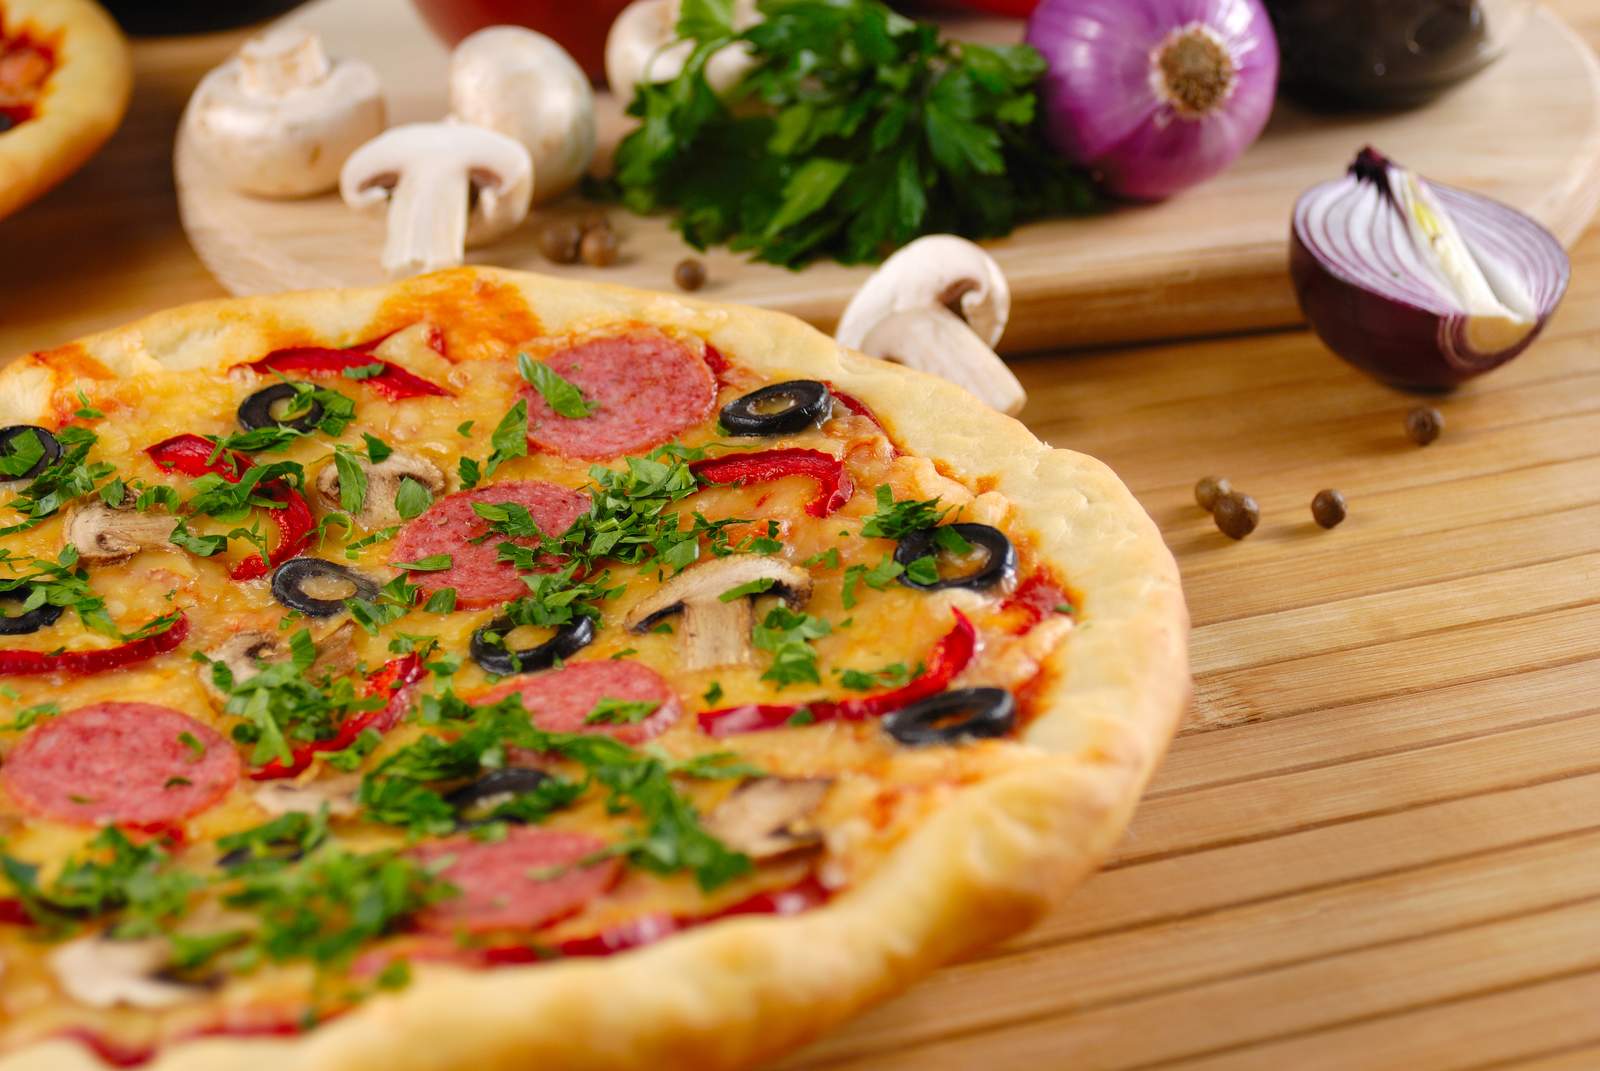 Una especialista en nutriología explica porqué una rebanada de pizza es más nutritiva que el cereal. (ARCHIVO)